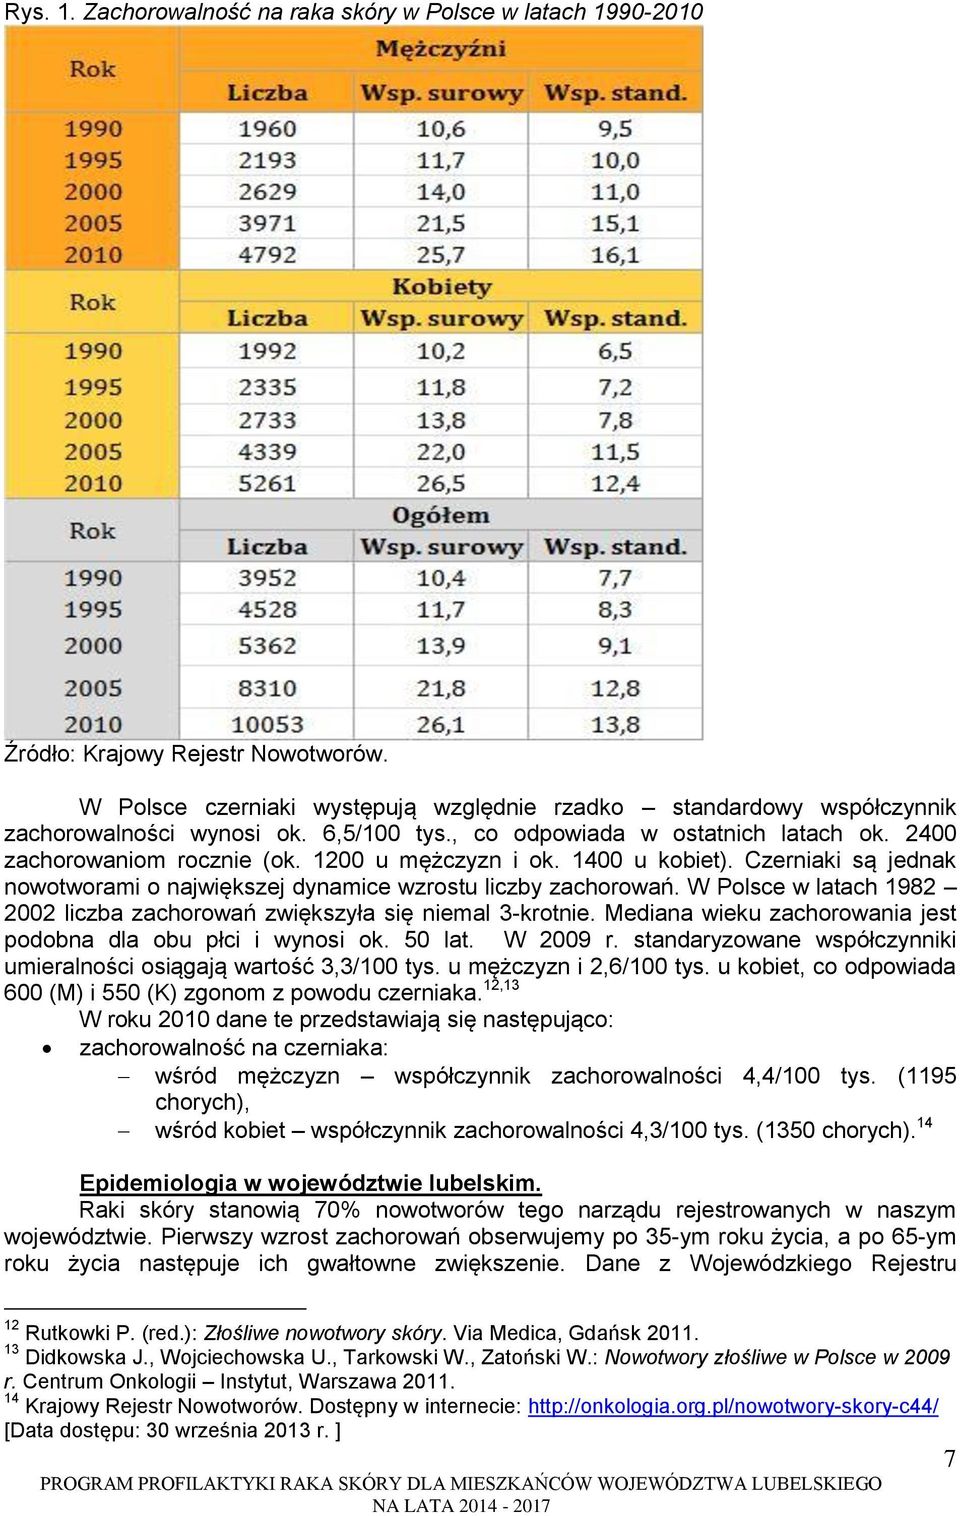 Czerniaki są jednak nowotworami o największej dynamice wzrostu liczby zachorowań. W Polsce w latach 1982 2002 liczba zachorowań zwiększyła się niemal 3-krotnie.